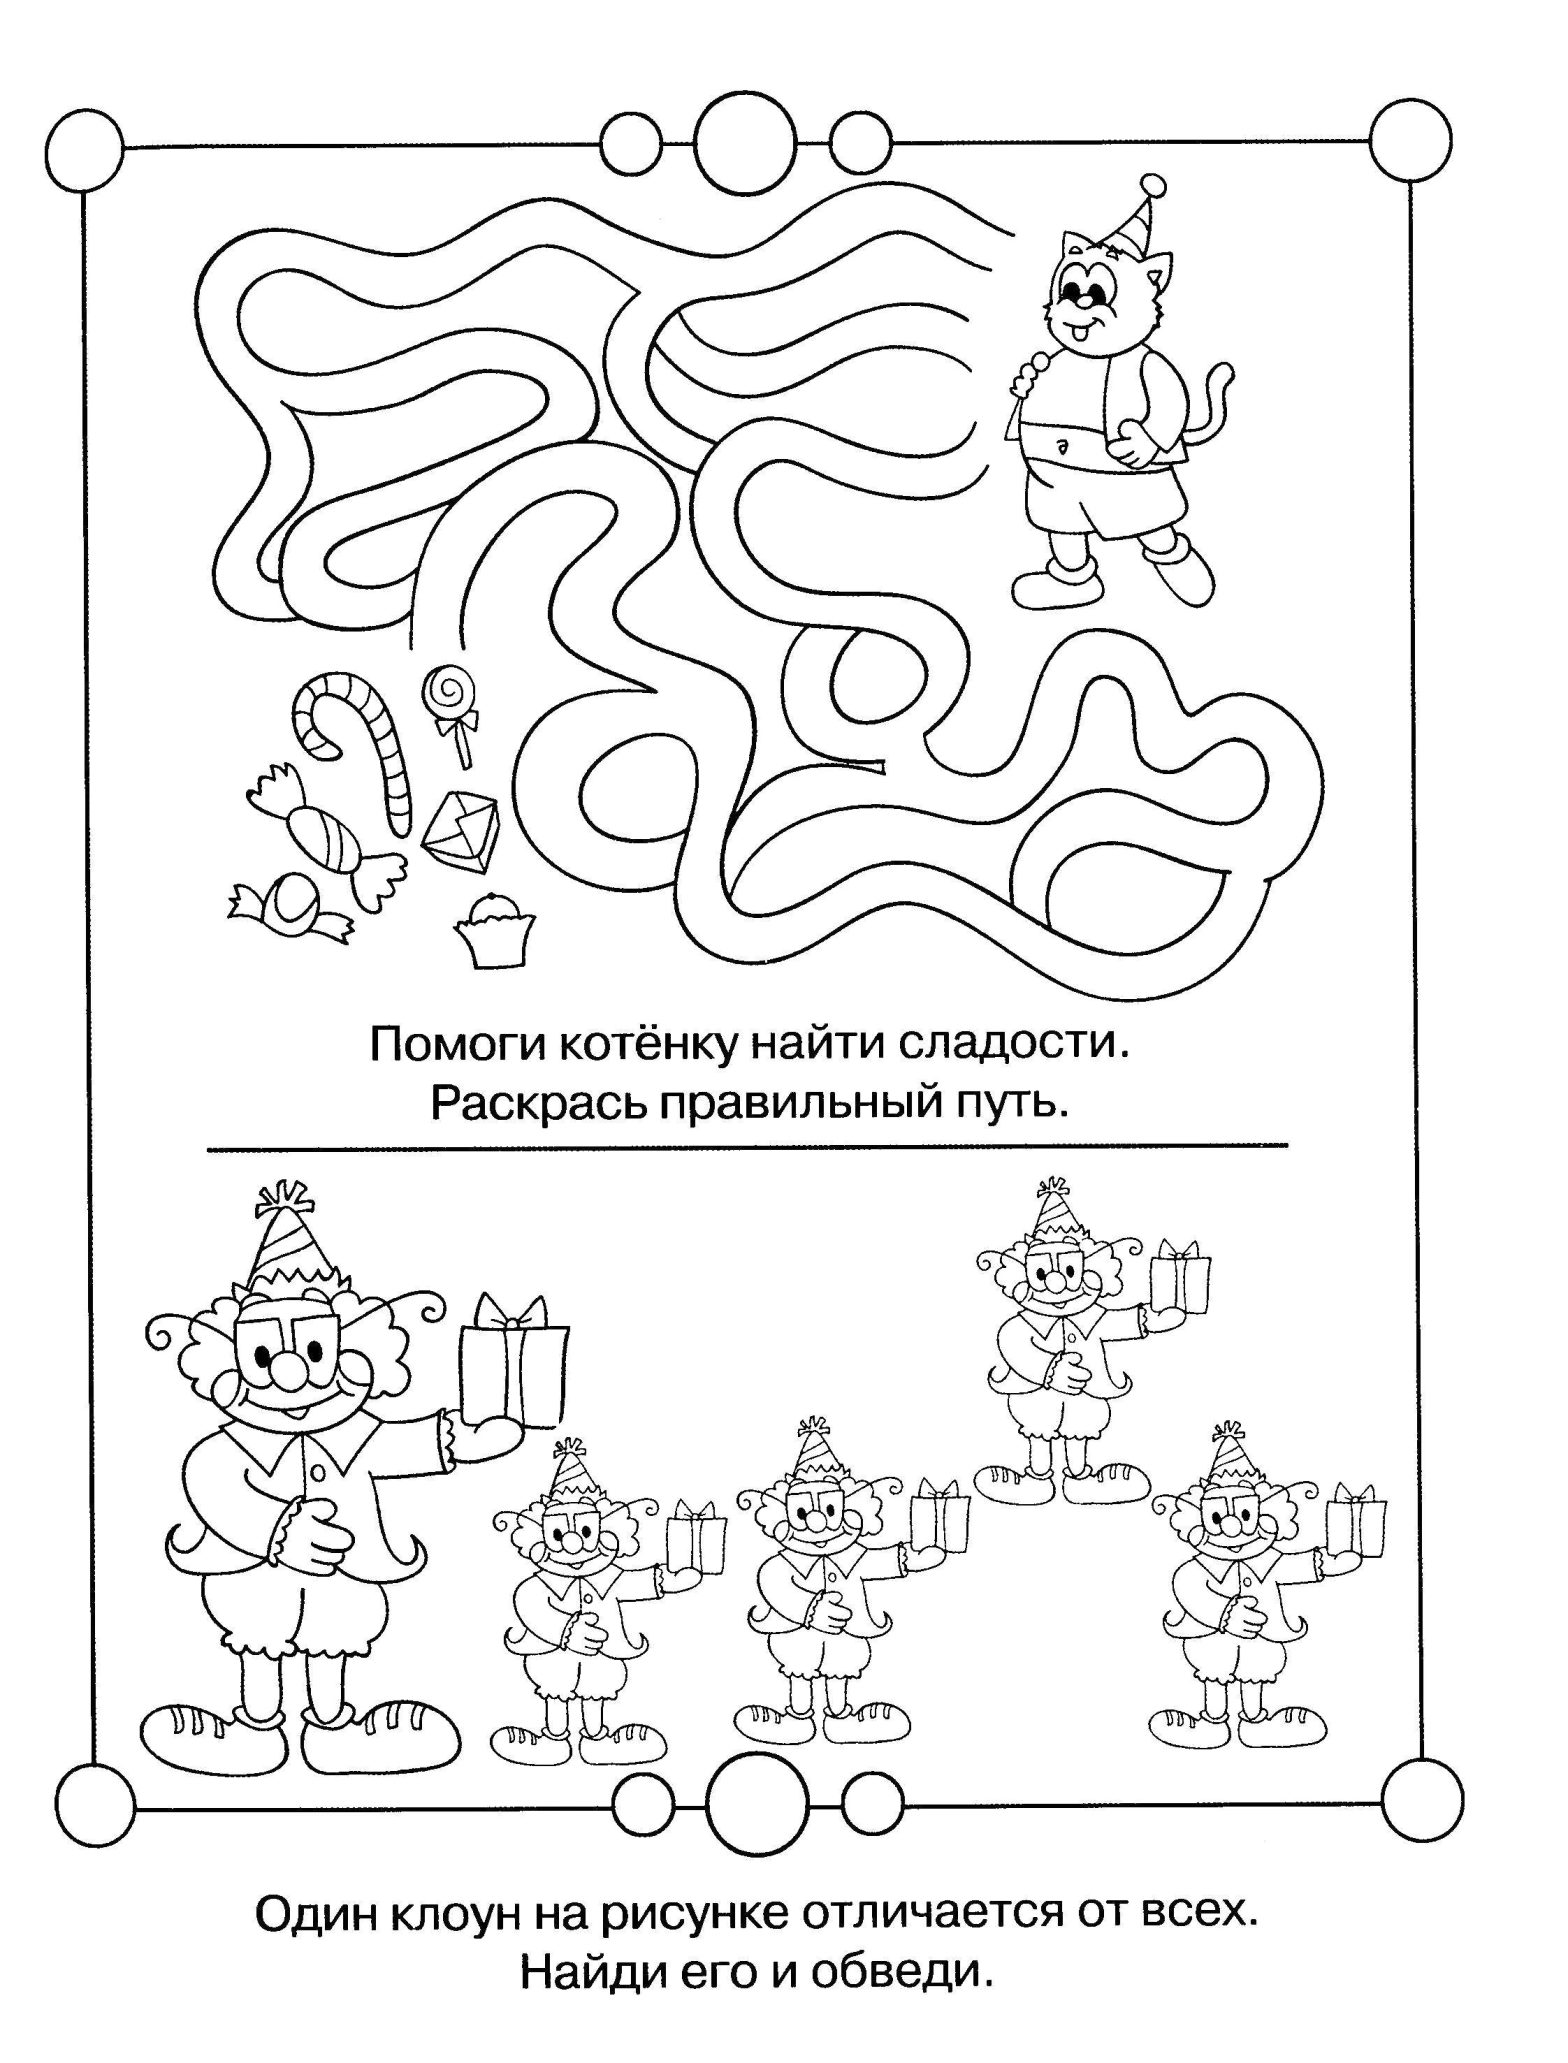 Раскраска с ребусом для развития логики у детей (логика)